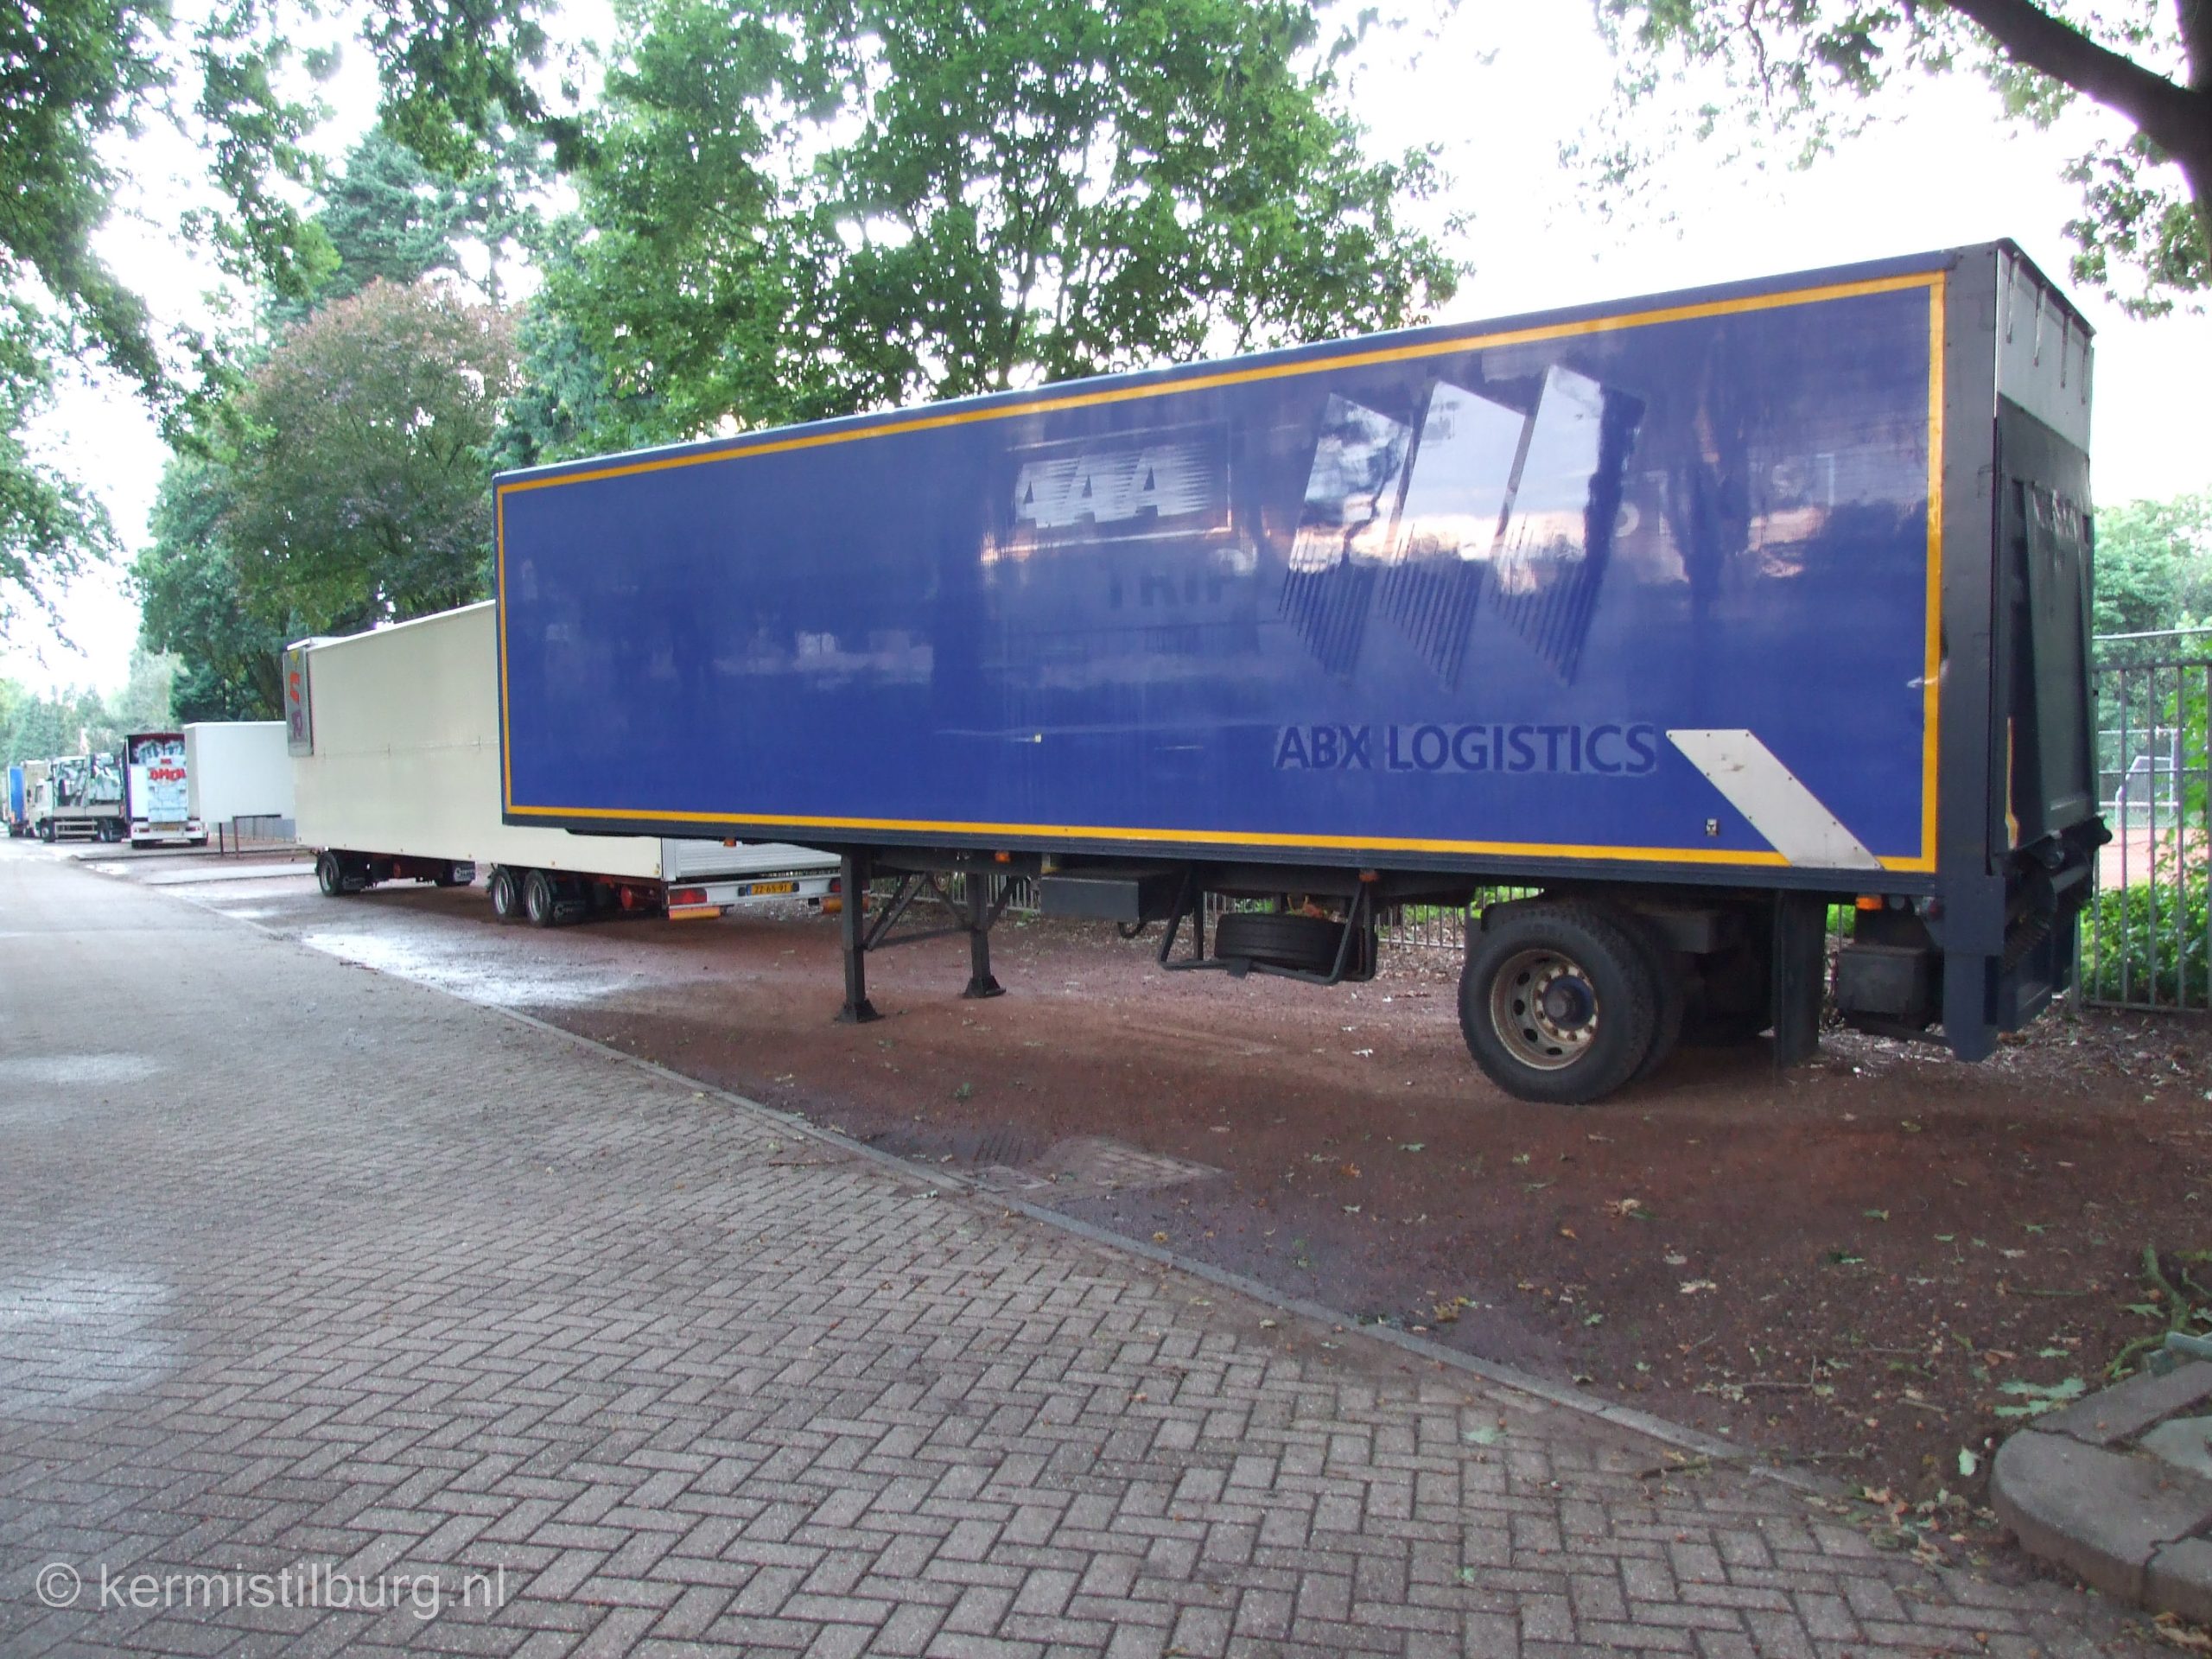 2014, Kermis, Tilburg, Tilburgse kermis, transport